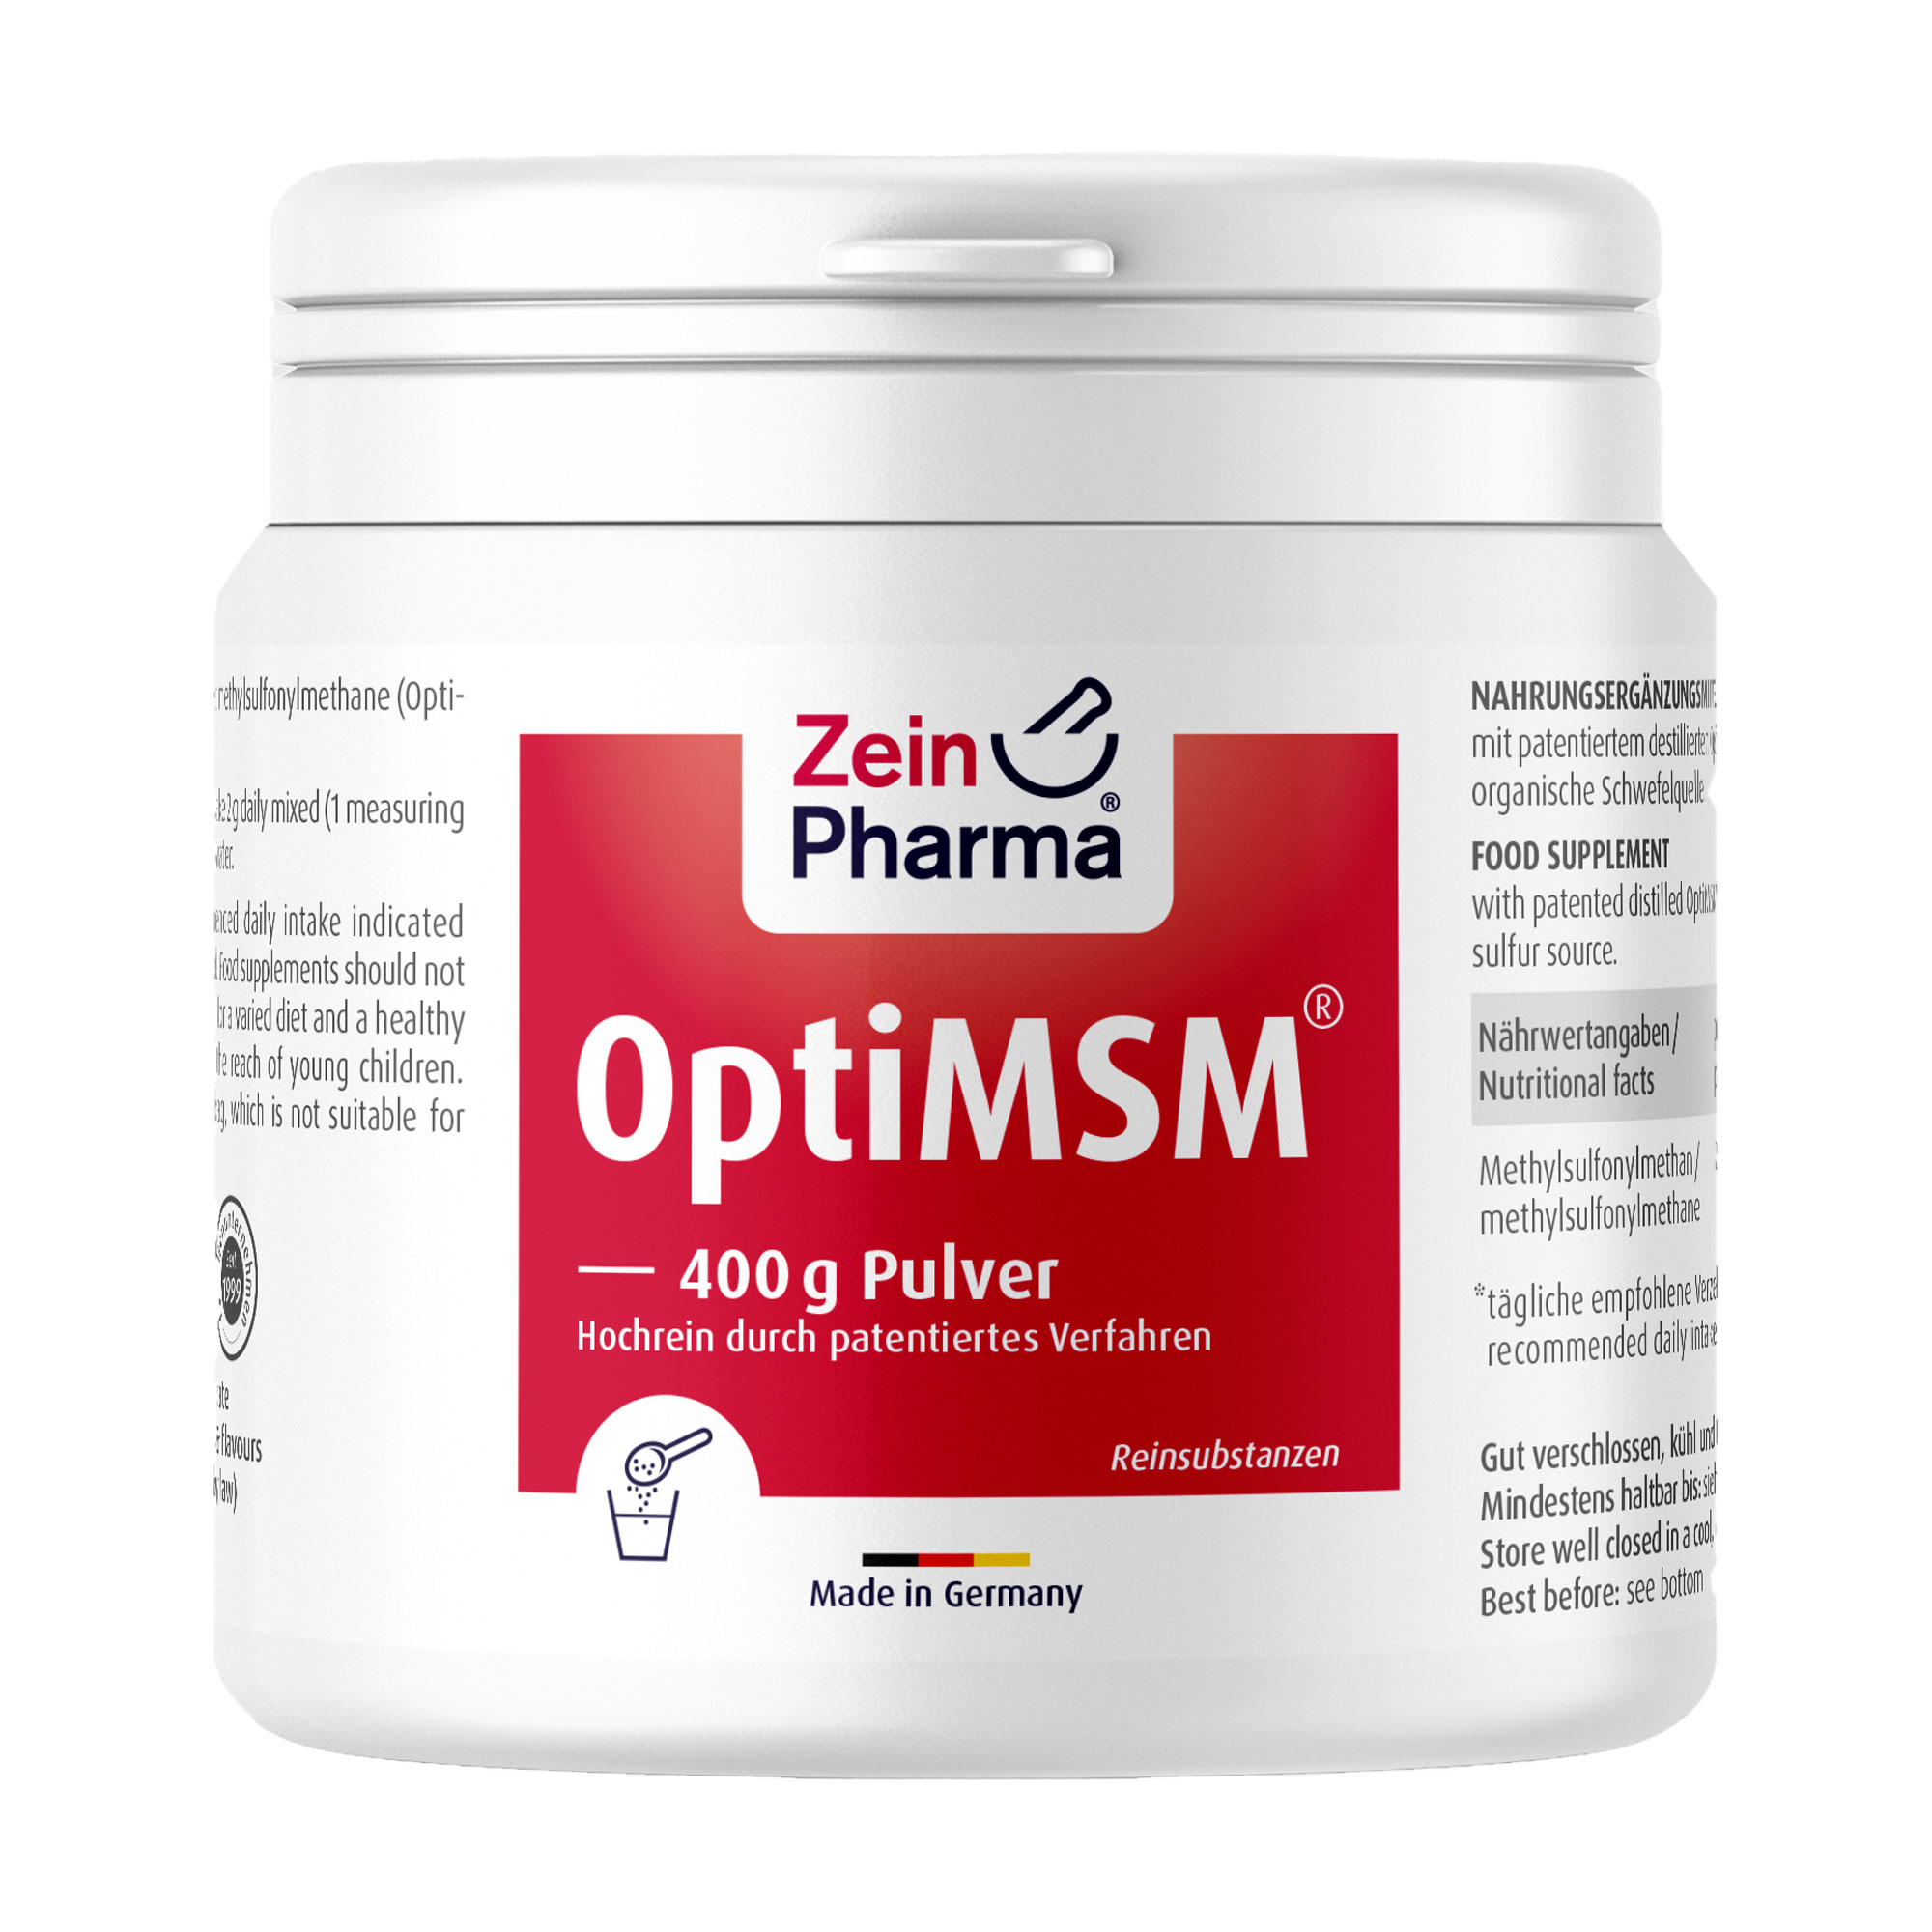 Nahrungsergänzungsmittel mit patentiertem destillierten OptiMSM als natürliche organische Schwefelquelle.